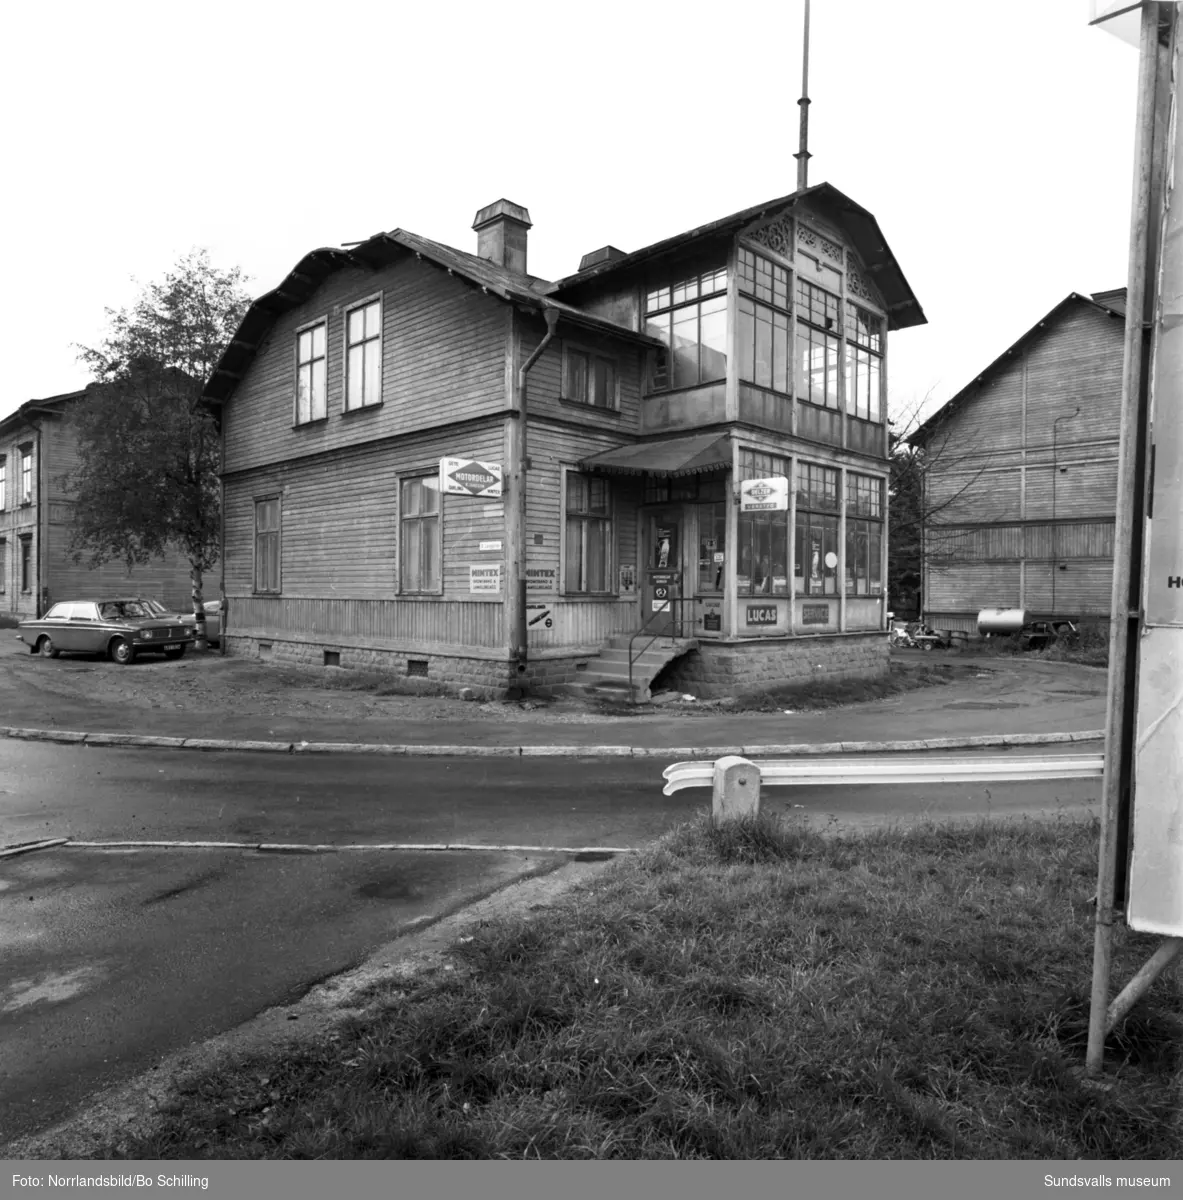 Motordelar B Jansson är en välbekant inrättning för mekande Sundsvallsbor. Firman som startades 1960 på Södra Järnvägsgatan, huserade mellan 1964-1968 i det här trähuset som då fanns på Östra Långgatan 2 med den vackra glasverandan vänd ut mot Parkgatan. Bilden är från hösten 1968, strax innan flytten till mer ändamålsenliga lokaler vid Nybrogatan. Senare bar det av västerut mot det så kallade ”Långholmen”, huset vid Bergsgatan bortom S:t Olofsskolan, och numera (2015) bedrivs verksamheten i egen fastighet i Nacksta industriområde. Exteriör och interiörbilder.